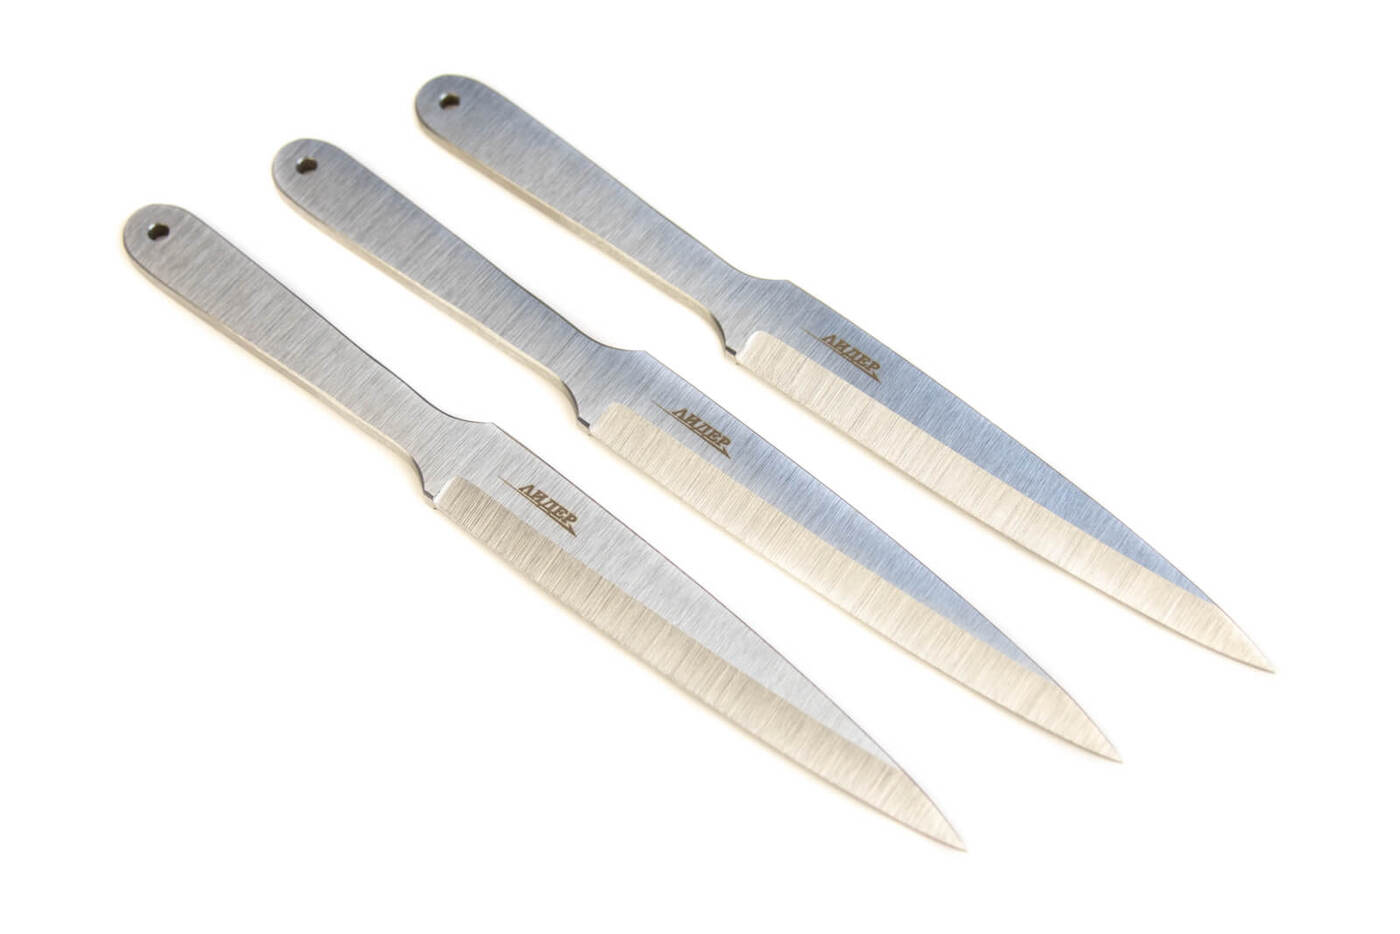 Ножи для метания своими руками. Часть первая | Метательные ножи, Ножи, Боевые ножи